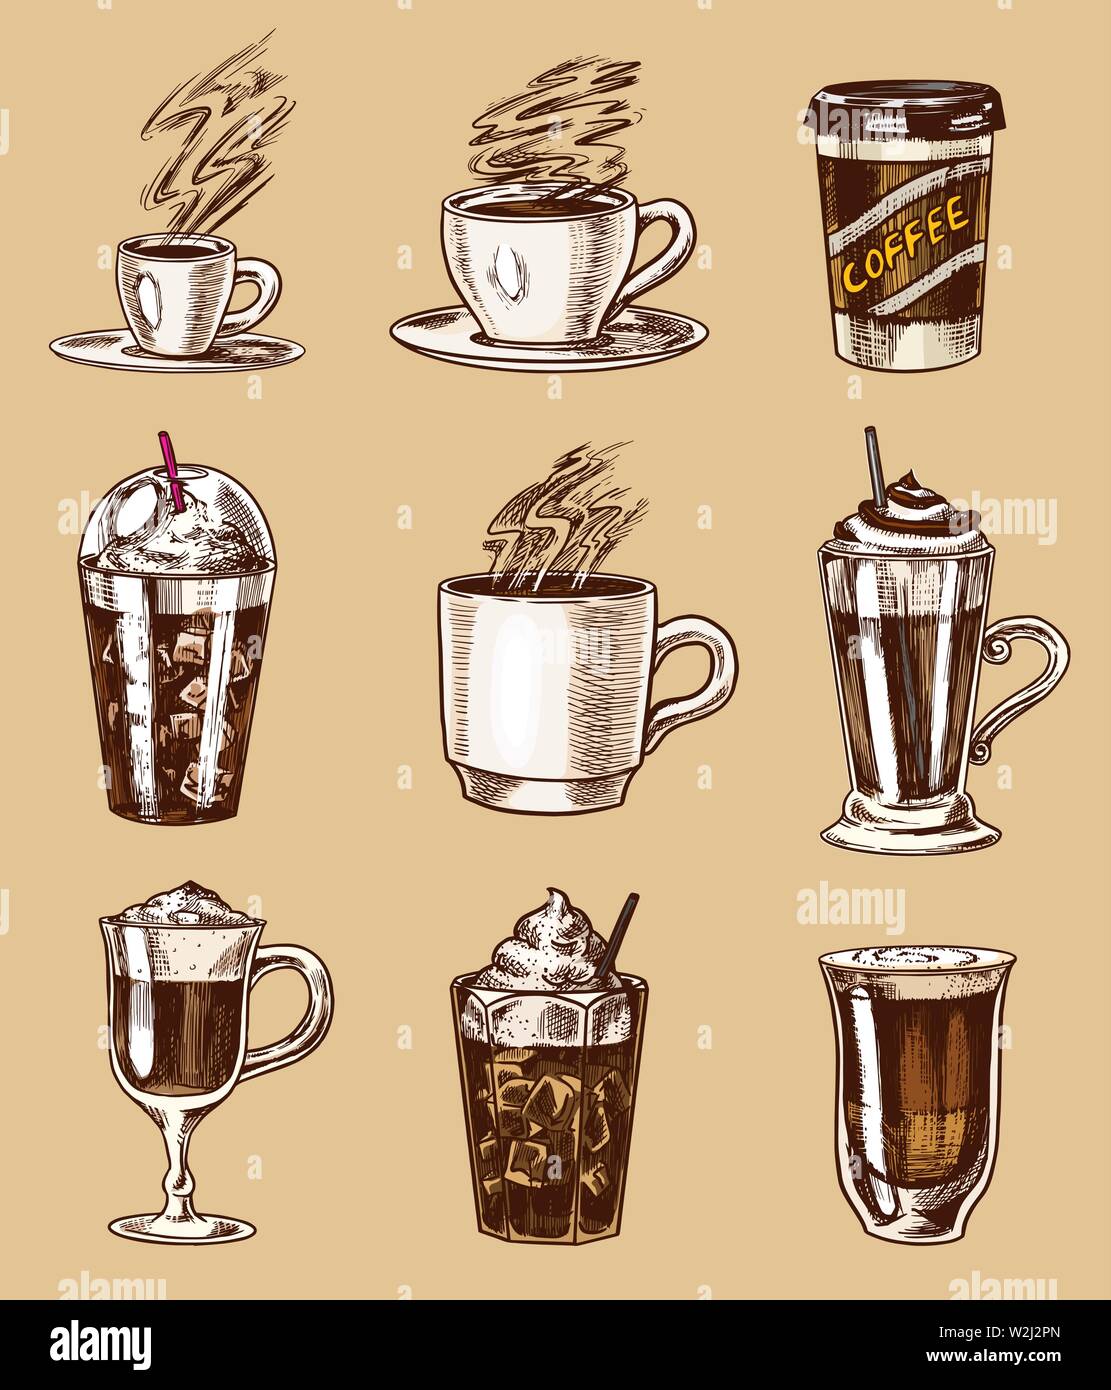 Eingestellt von Tassen Kaffee im Vintage Style. Nehmen Sie Cappuccino und Glace, Espresso und Latte, Mokka und Americano, Frappe in einem Glas. Hand gezeichnet Stock Vektor